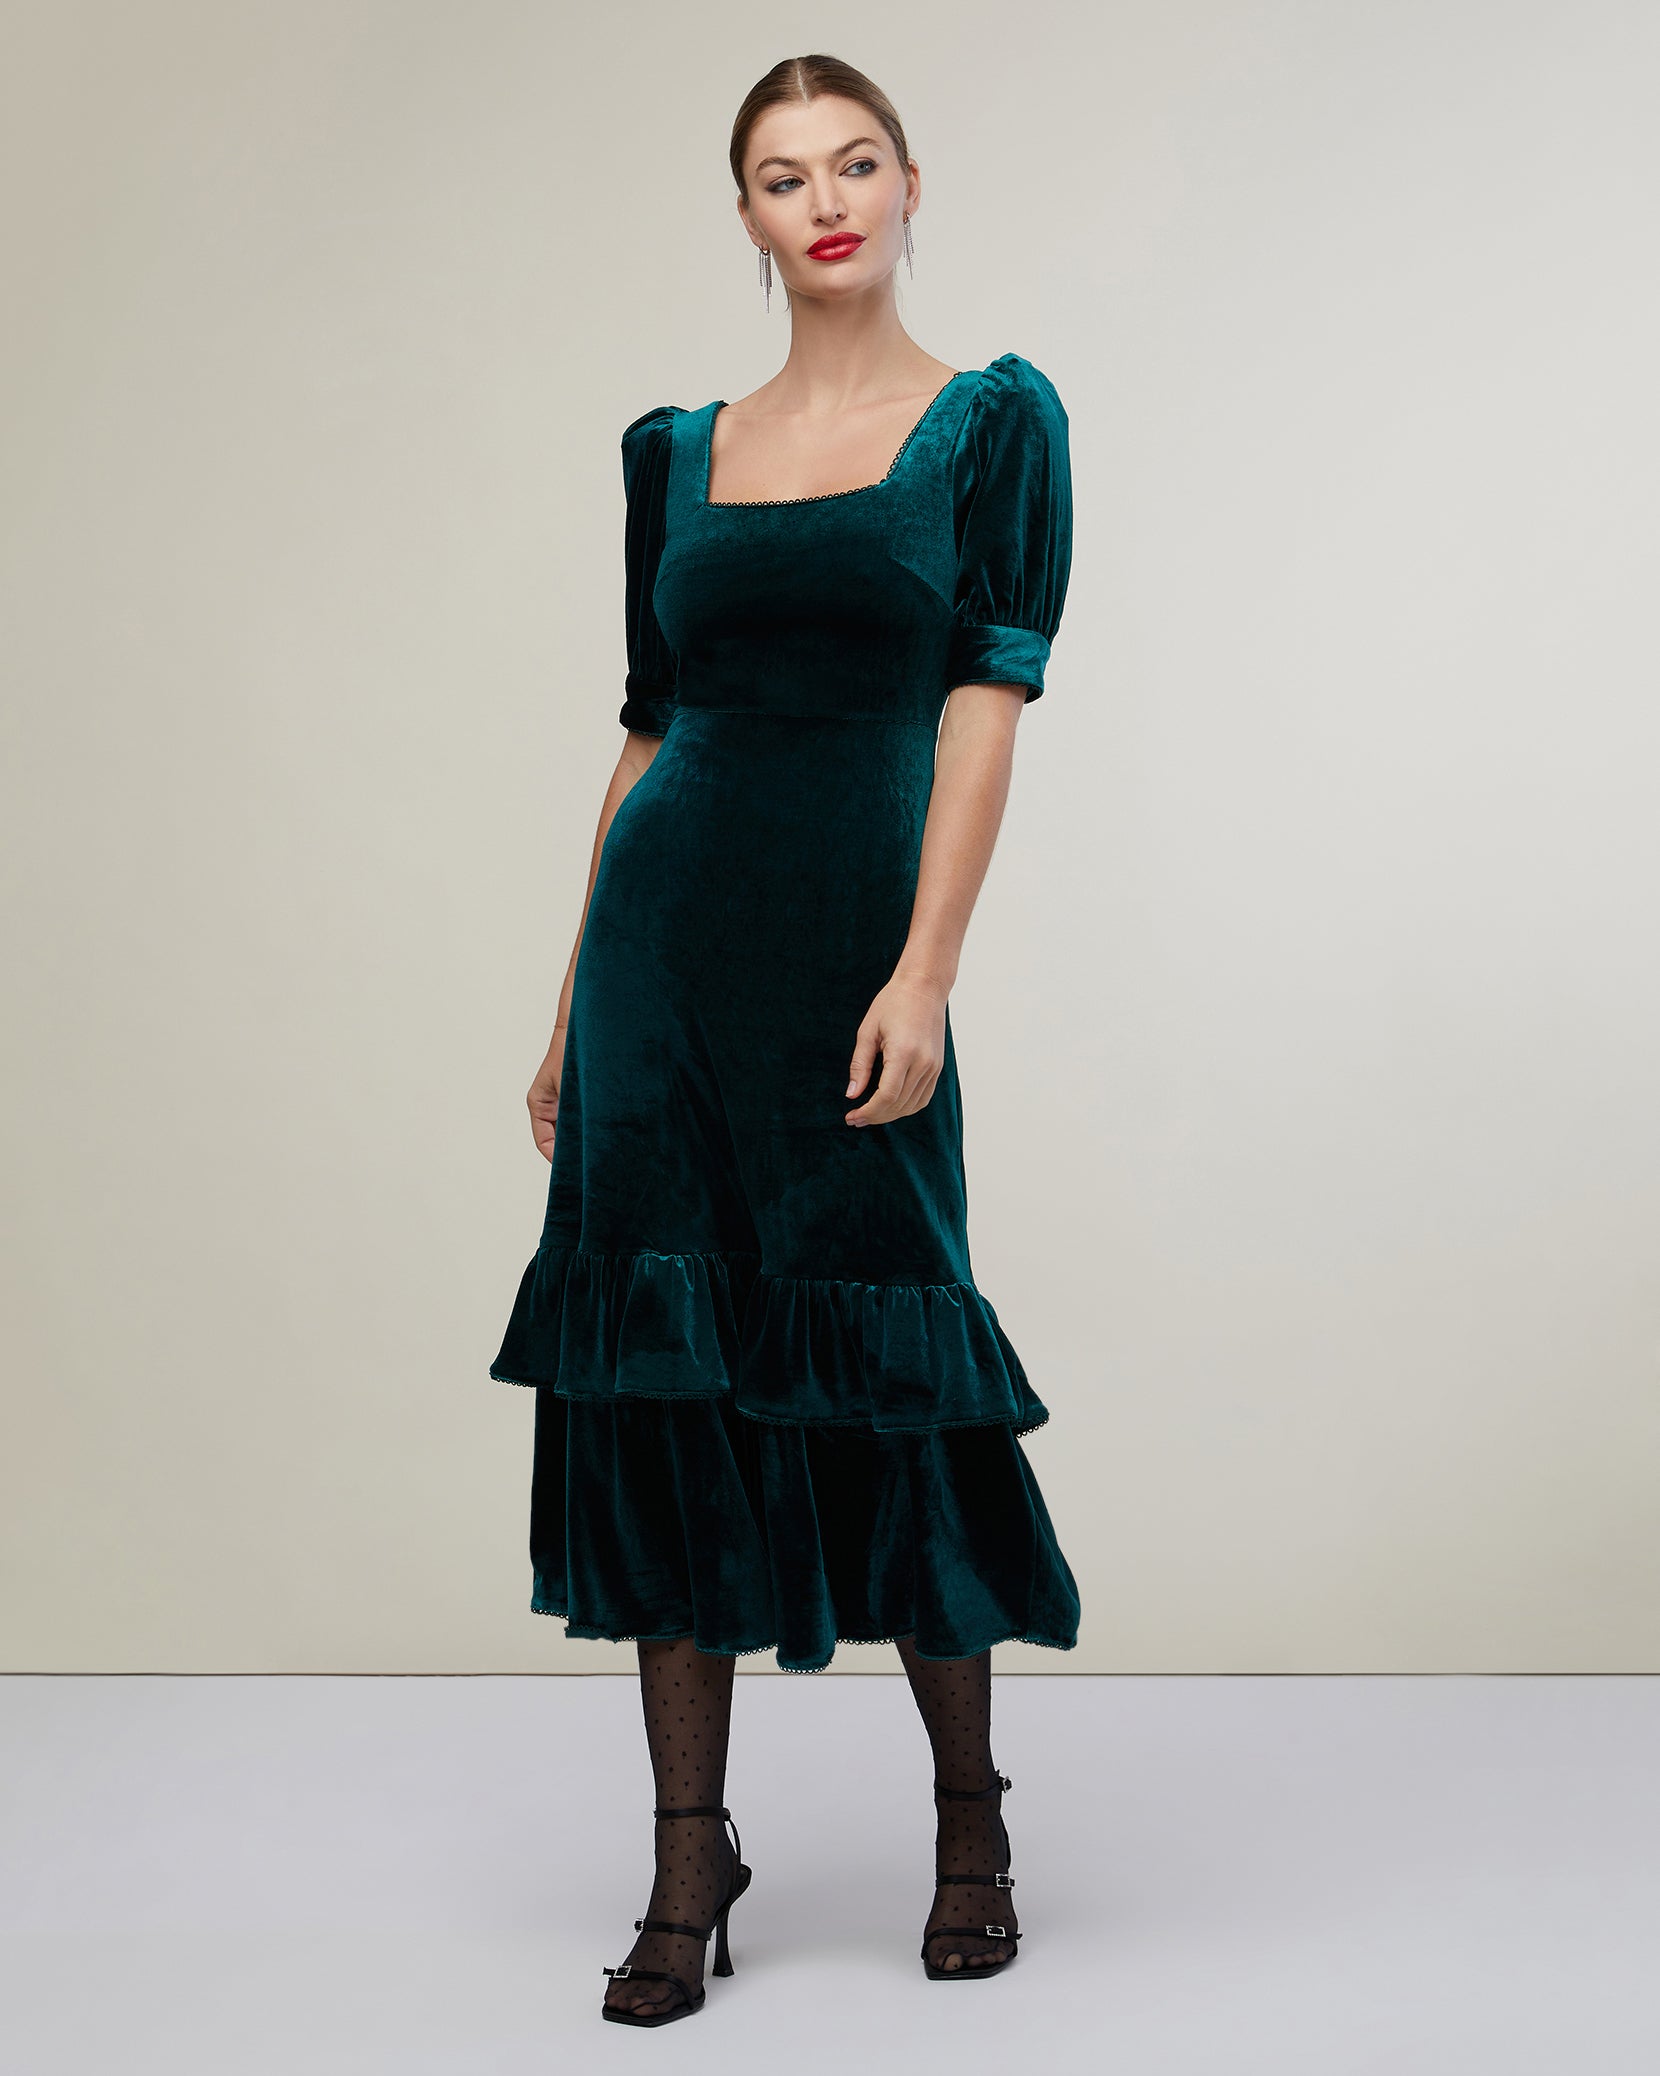 Puff Sleeve Peplum Skirt Midi Dress – Rachel Parcell, Inc.